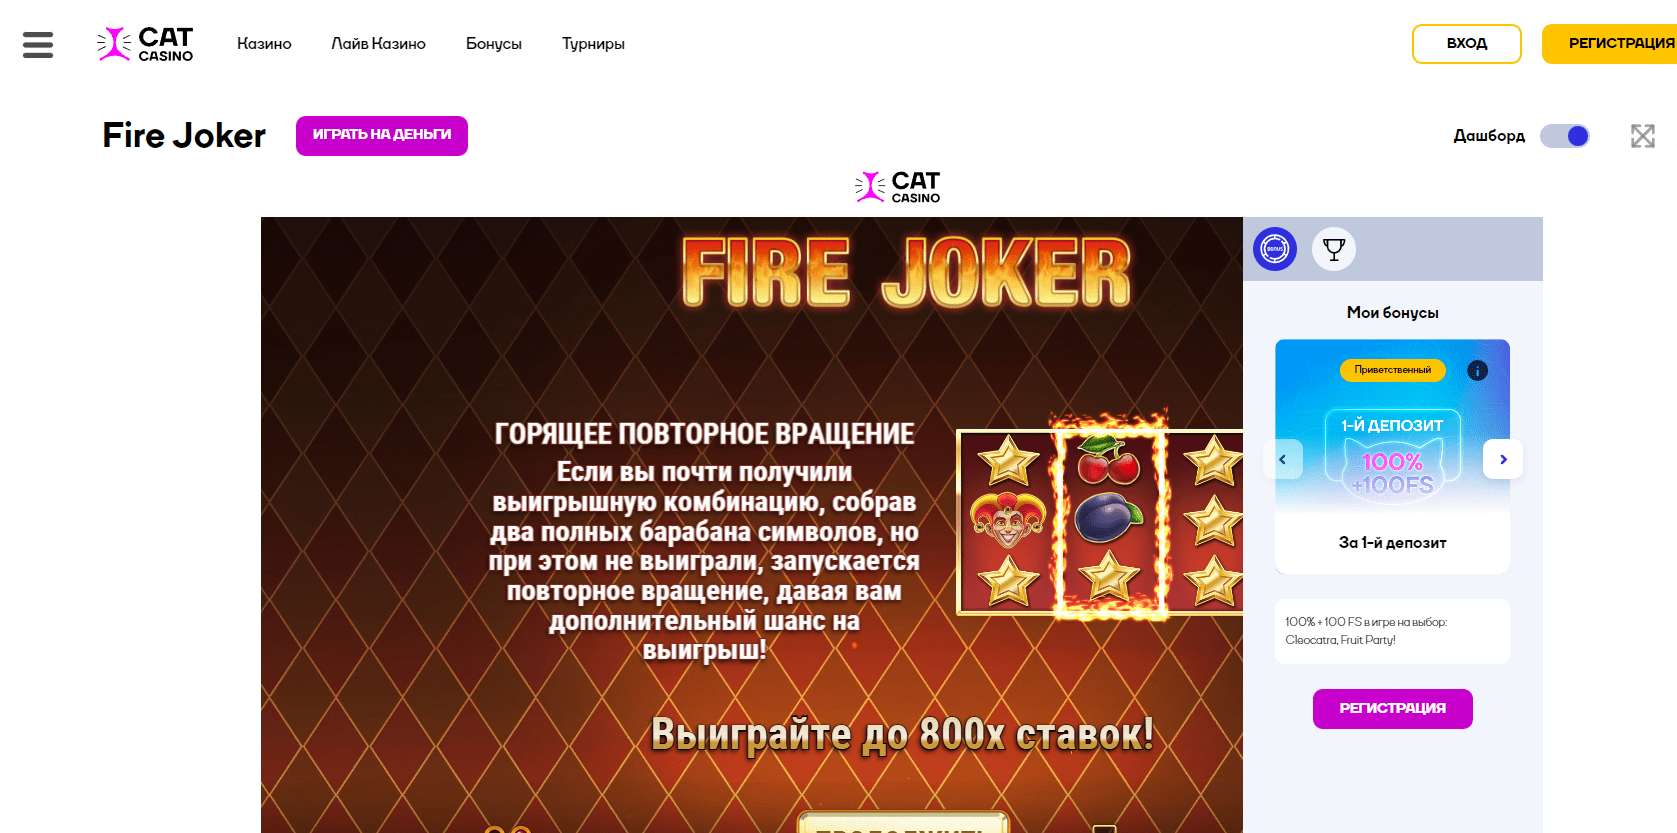 Fire joker online bij Cat casino